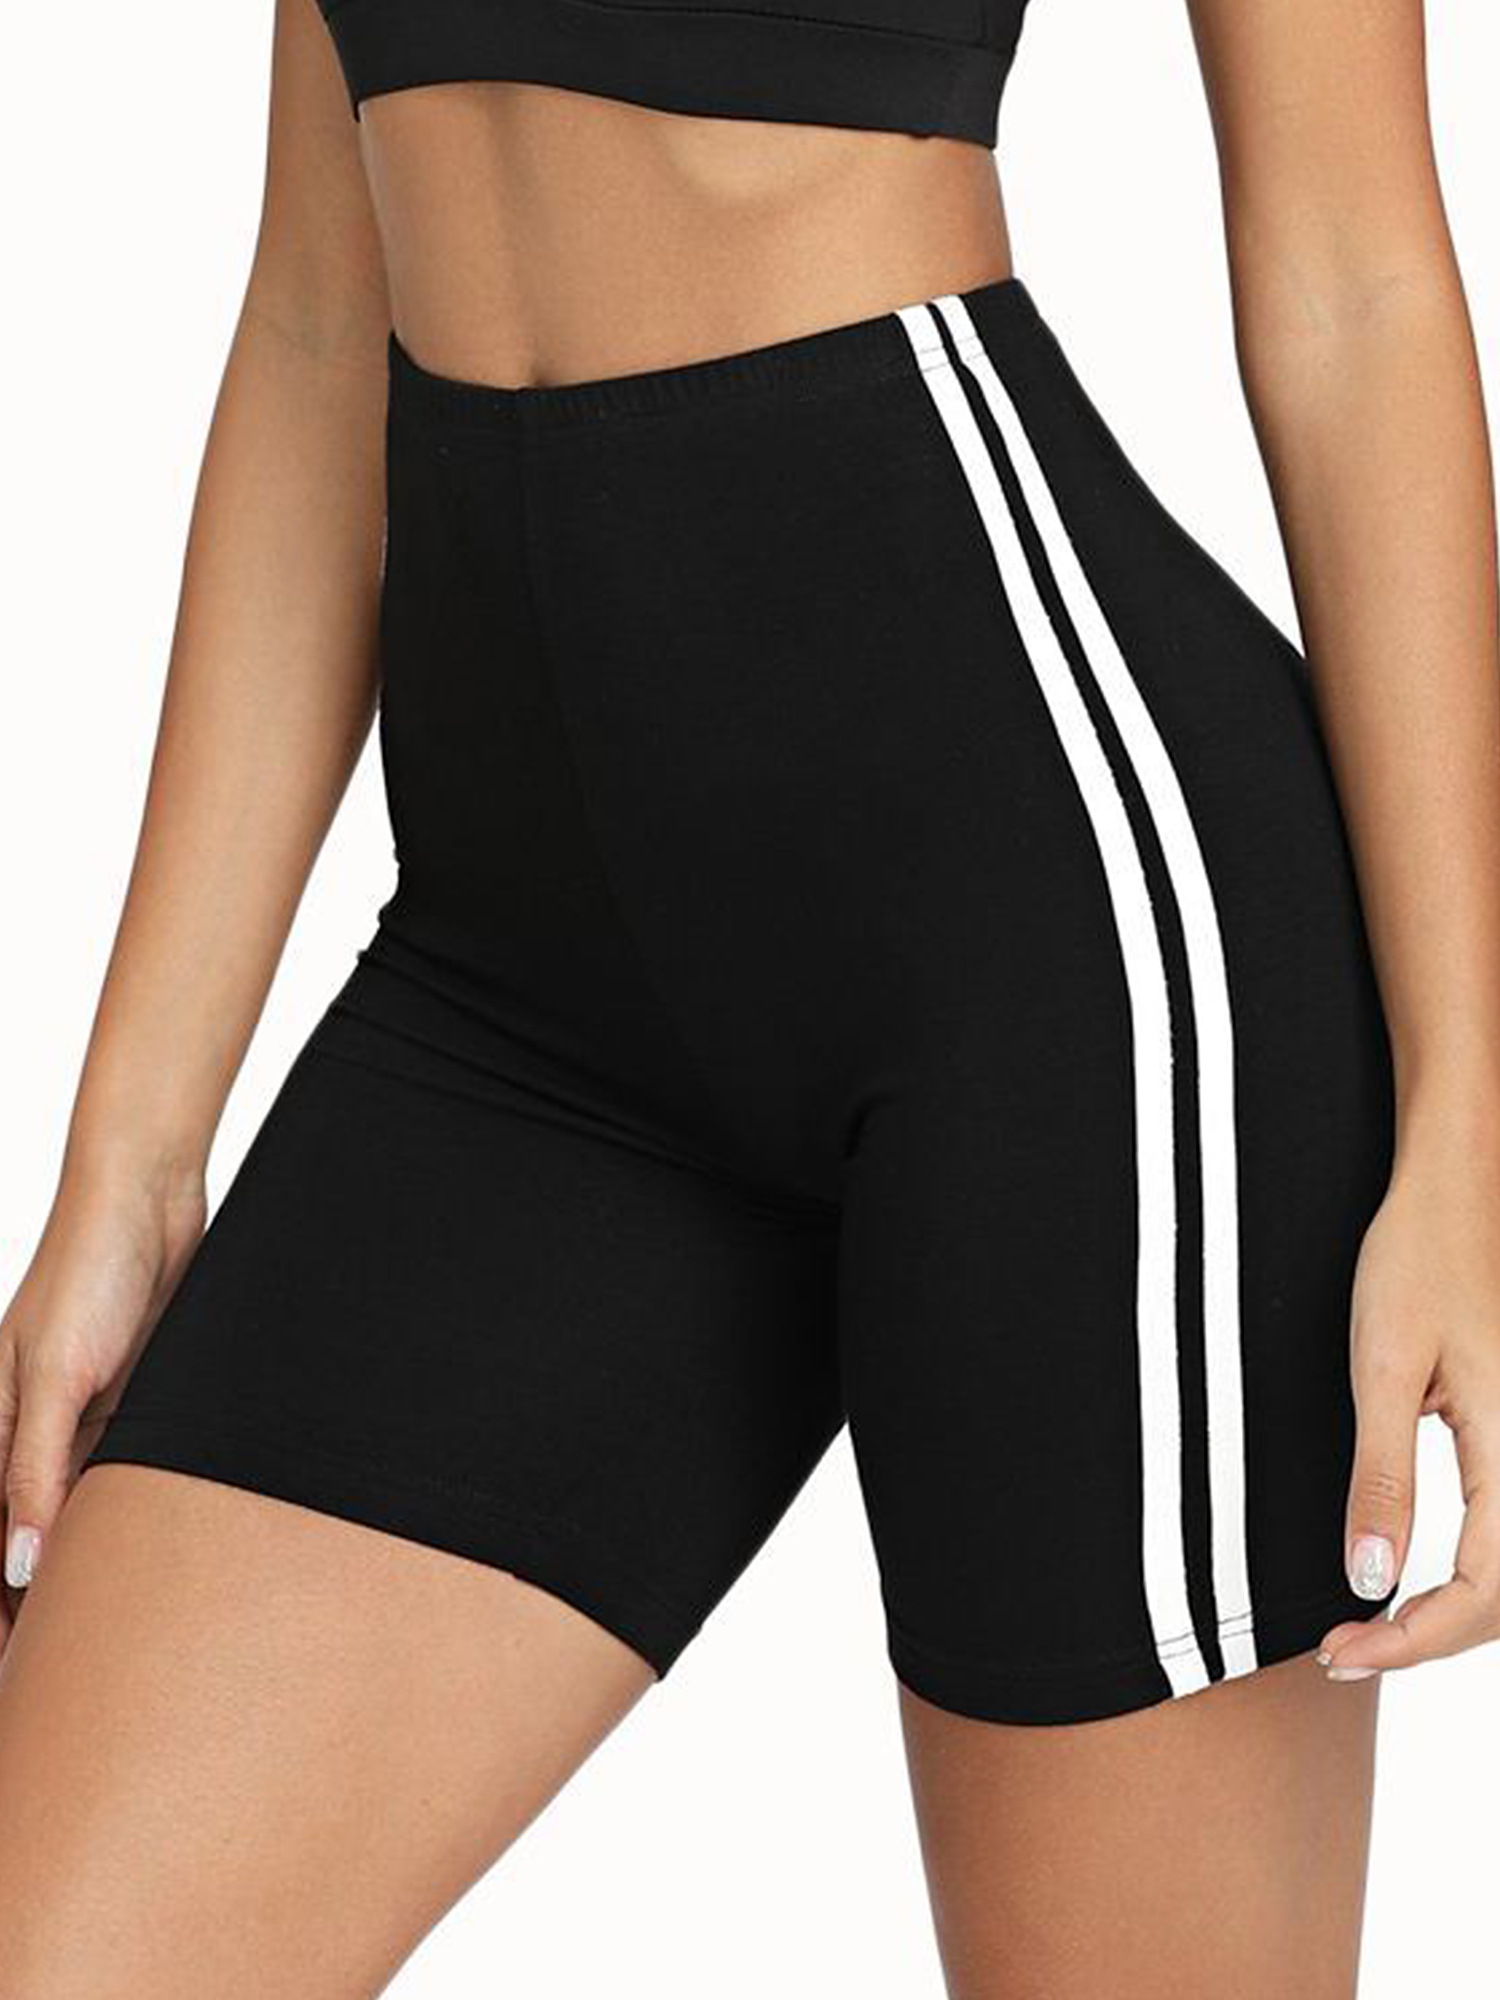 Yoga Shorts PP PLUIE POURPRE Women/'s Slip Shorts for Under Dress Workout Biker Shorts